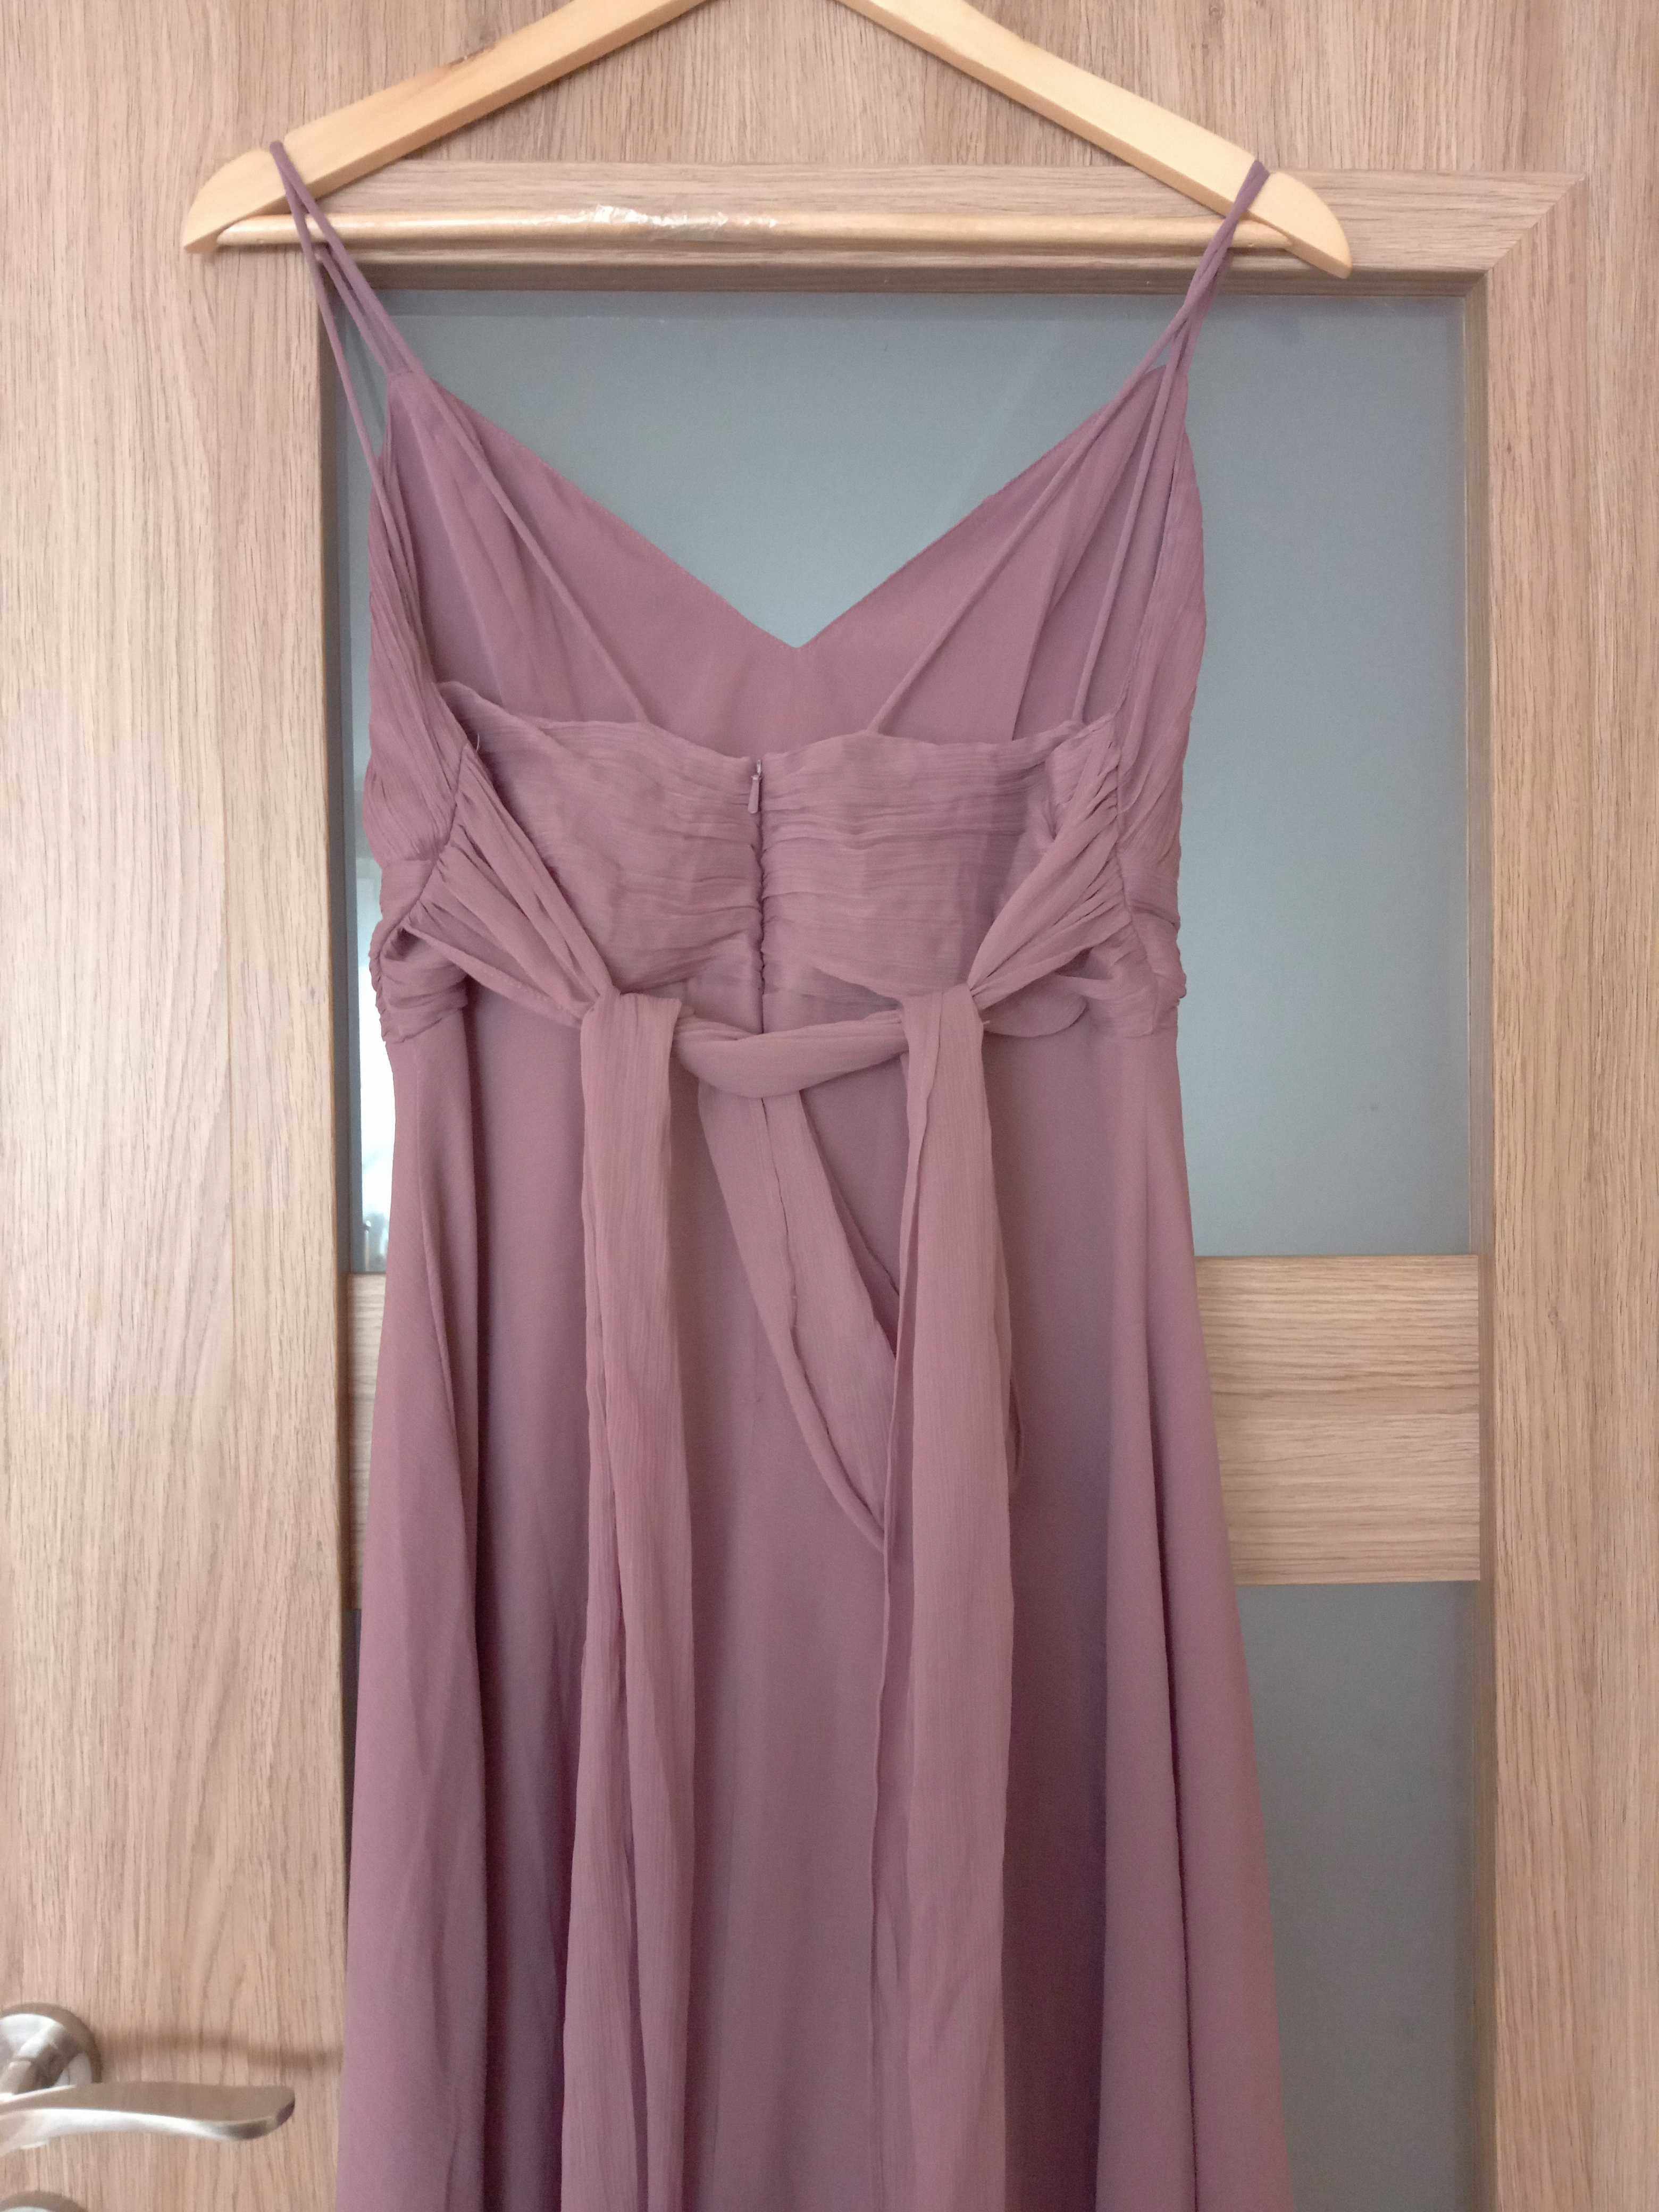 Fioletowa wrzosowa sukienka maxi długa dekolt marszczony zwiewna 36 s